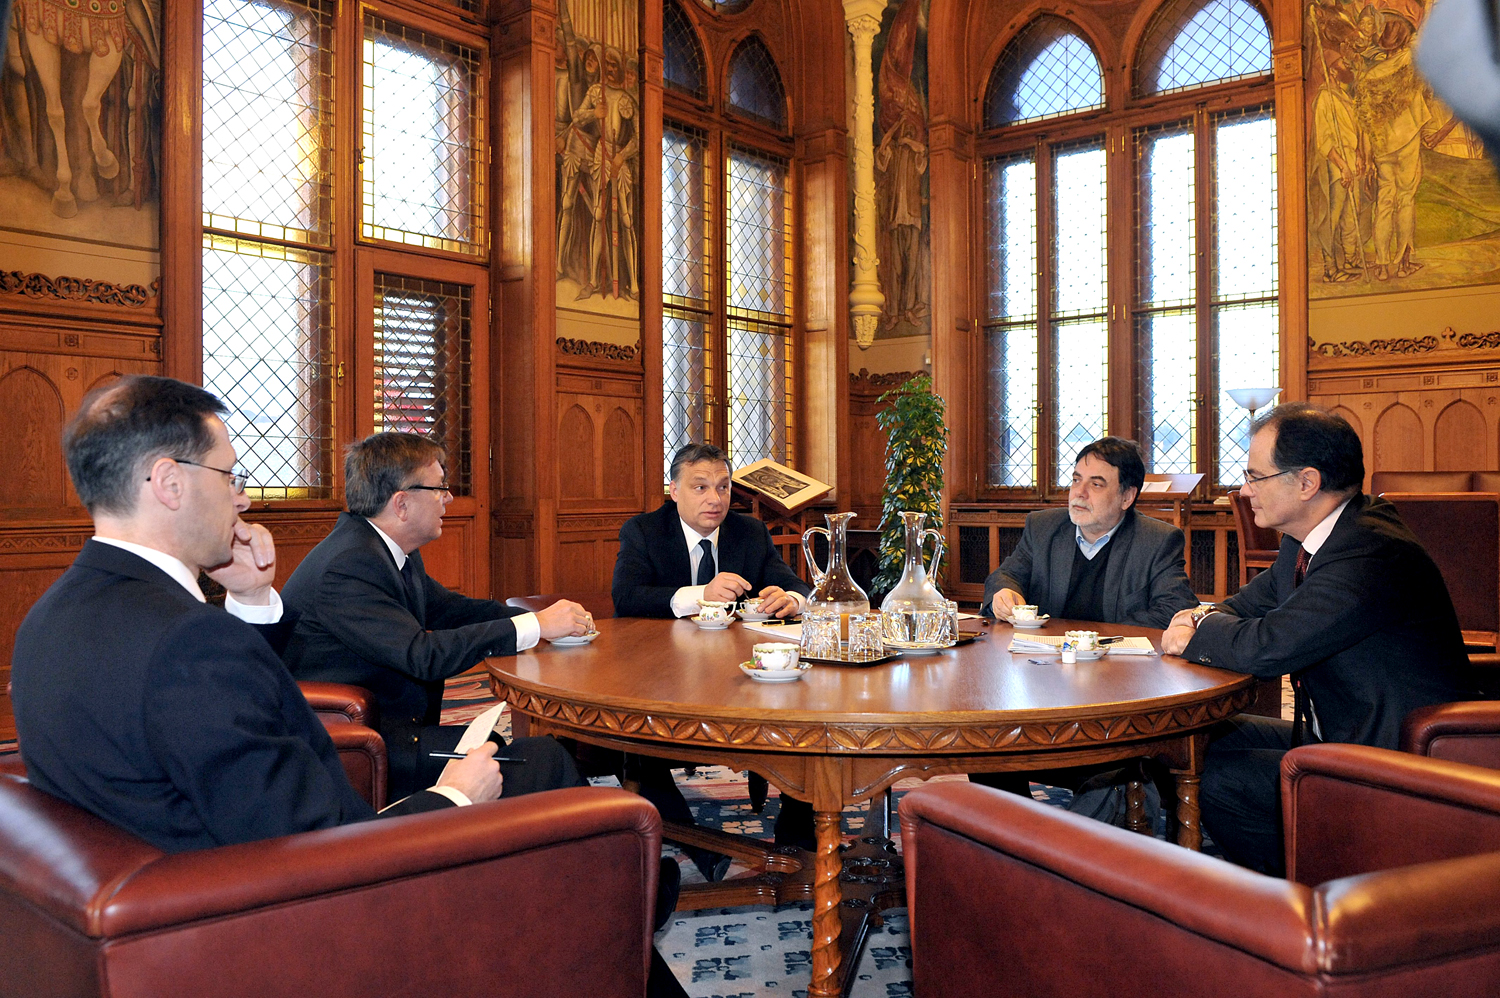 Fotóbizonyíték: Orbán Viktor ránéz Simor András jegybankelnökre. Az asztalnál Varga Mihály, Matolcsy György és Fellegi Tamás foglal még helyet